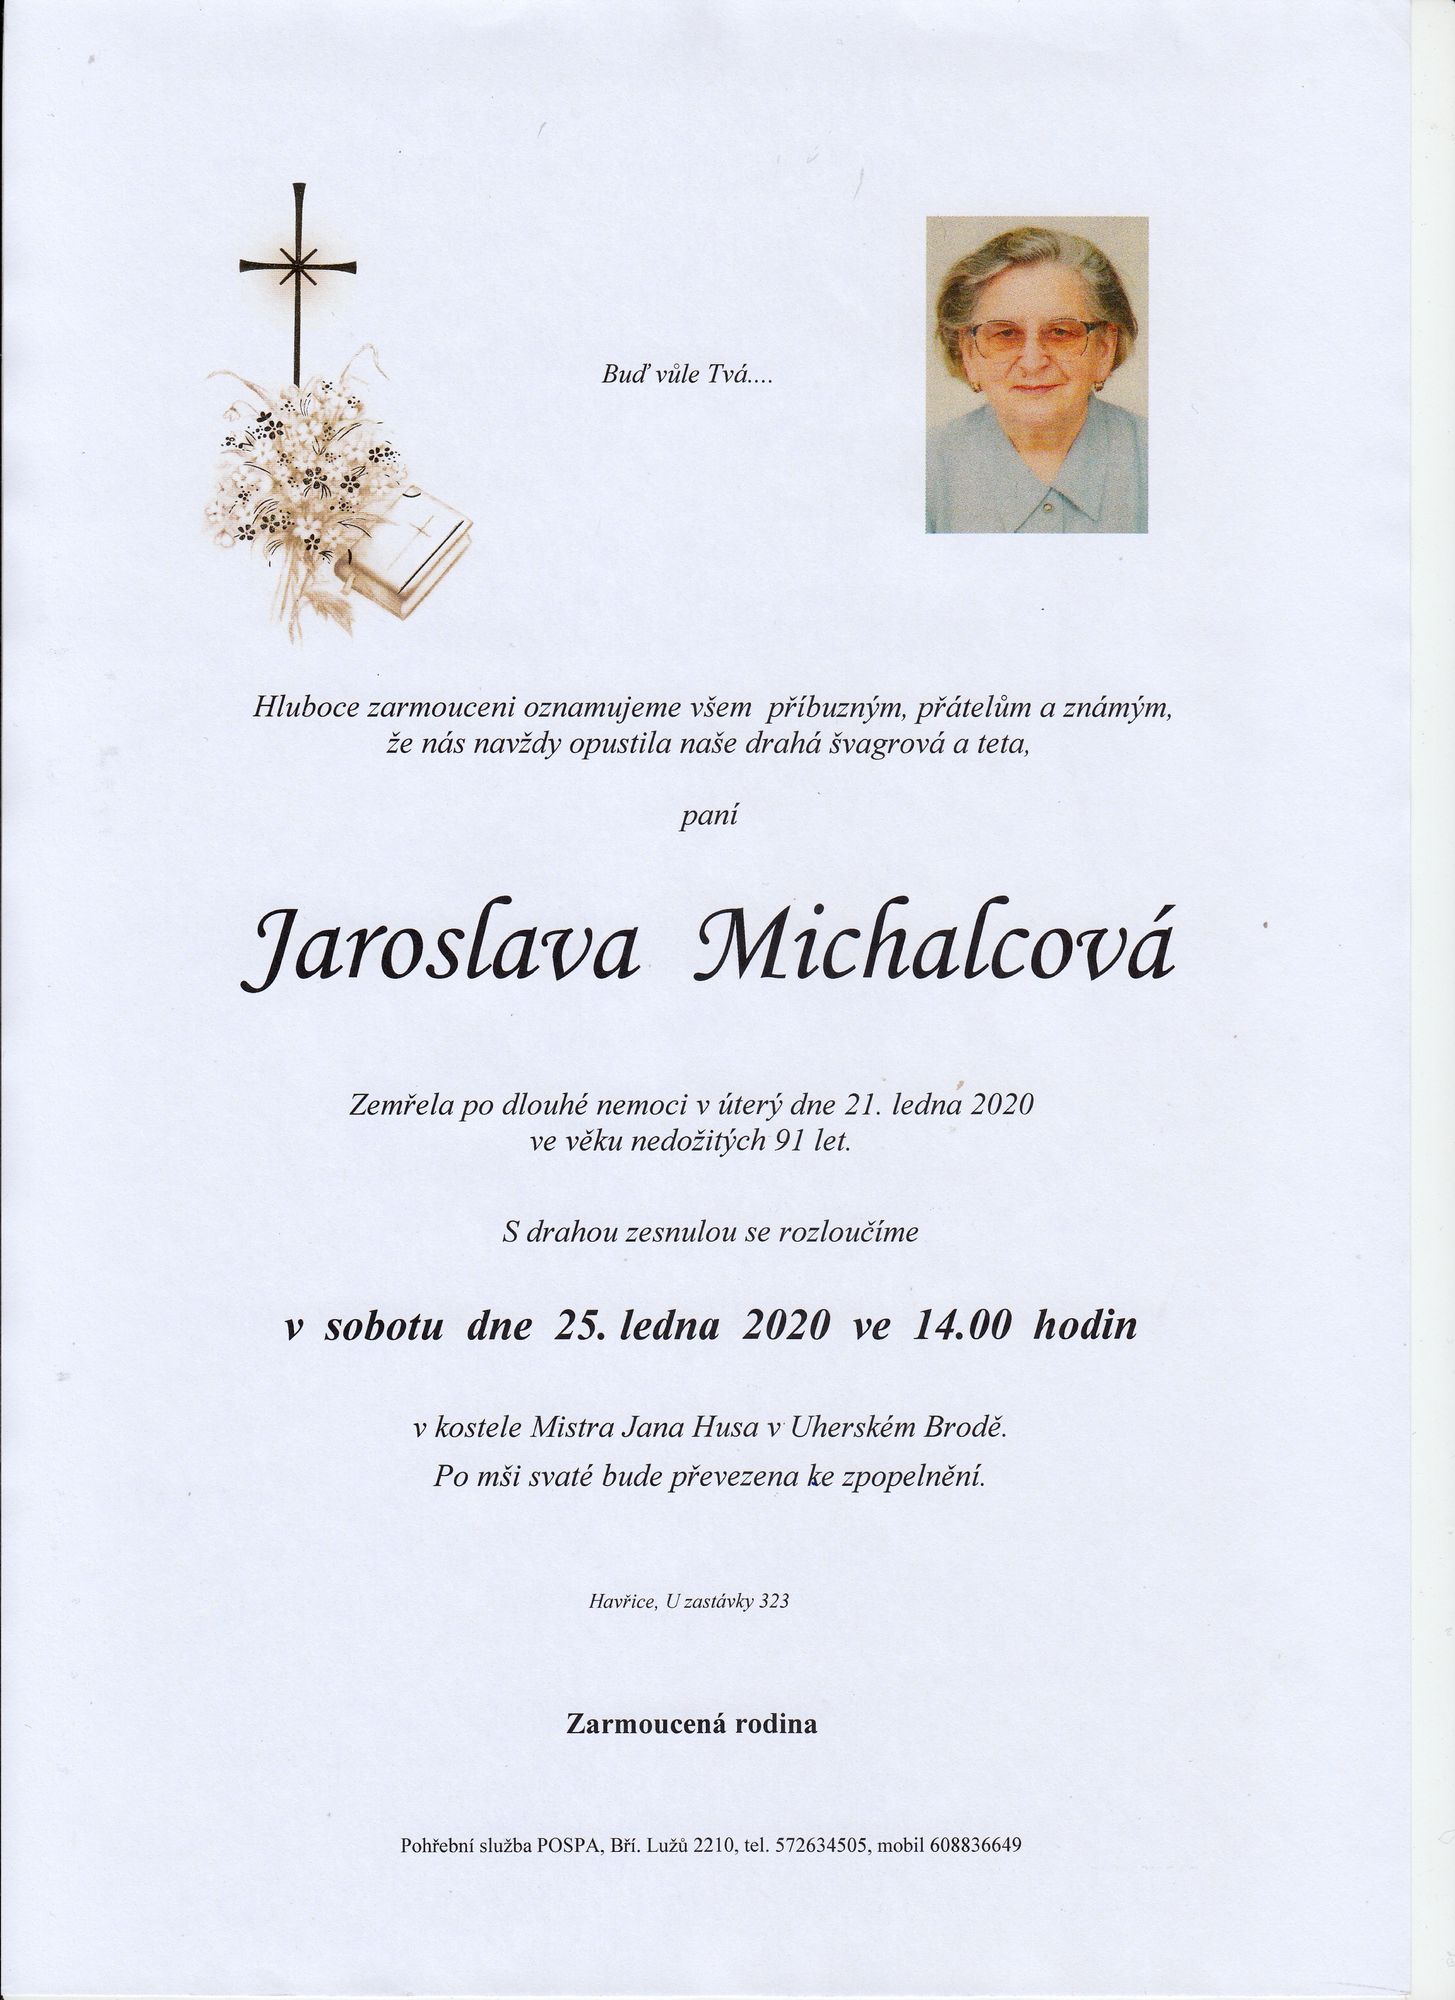 Jaroslava Michalcová